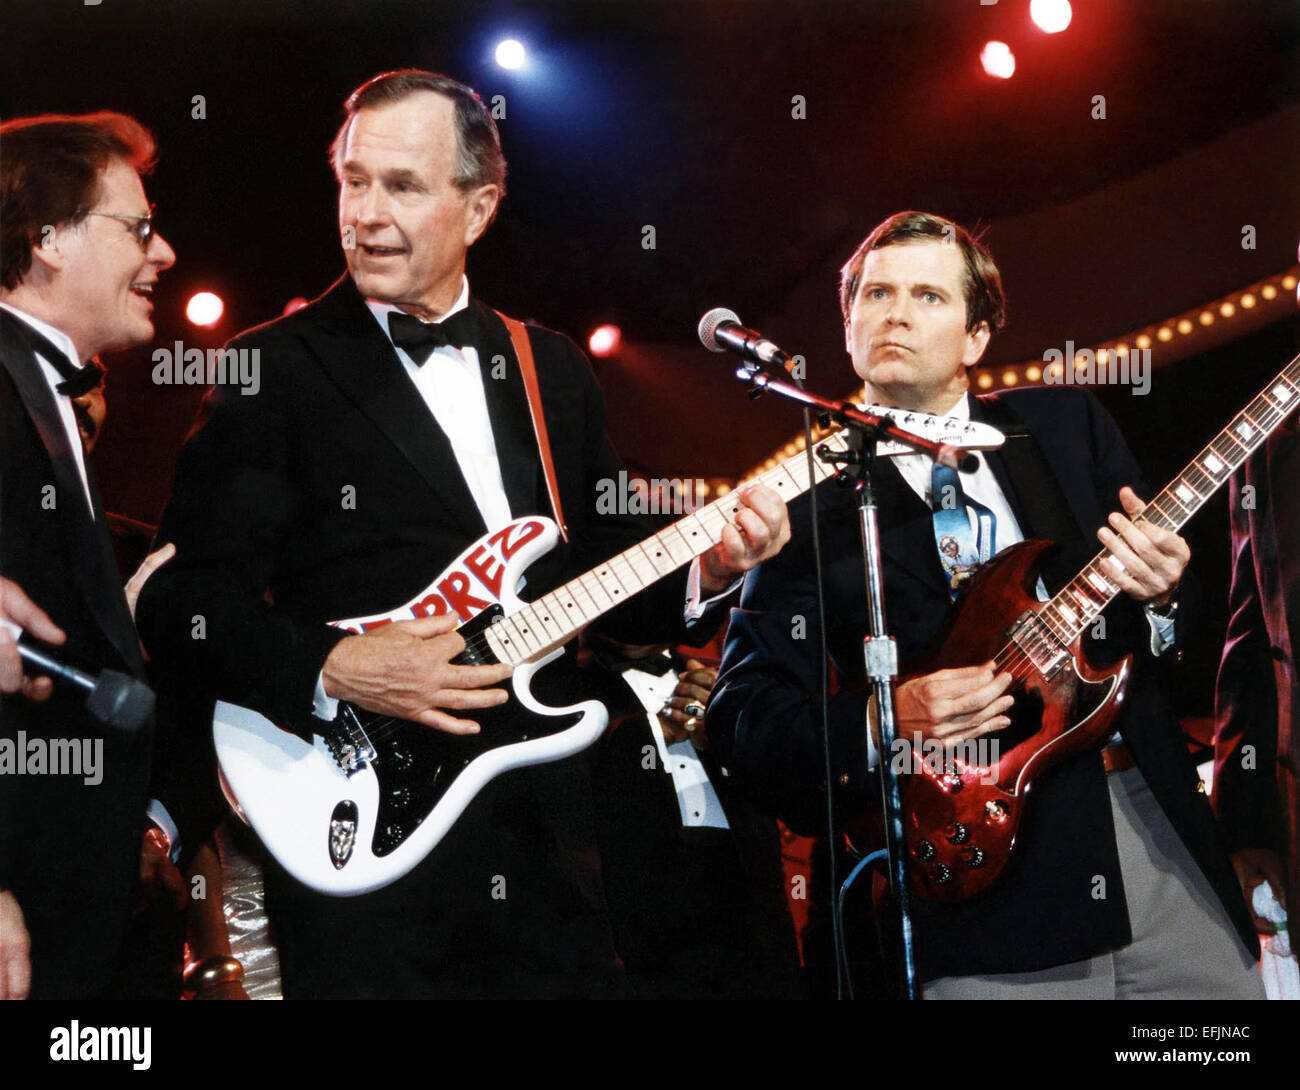 Il Presidente degli Stati Uniti George H.W. Bush e consulente politico Lee Atwater suonare la chitarra alla celebrazione per i giovani americani, parte della celebrazione inaugurale nel DC Armory Gennaio 21, 1989 a Washington, DC. Foto Stock